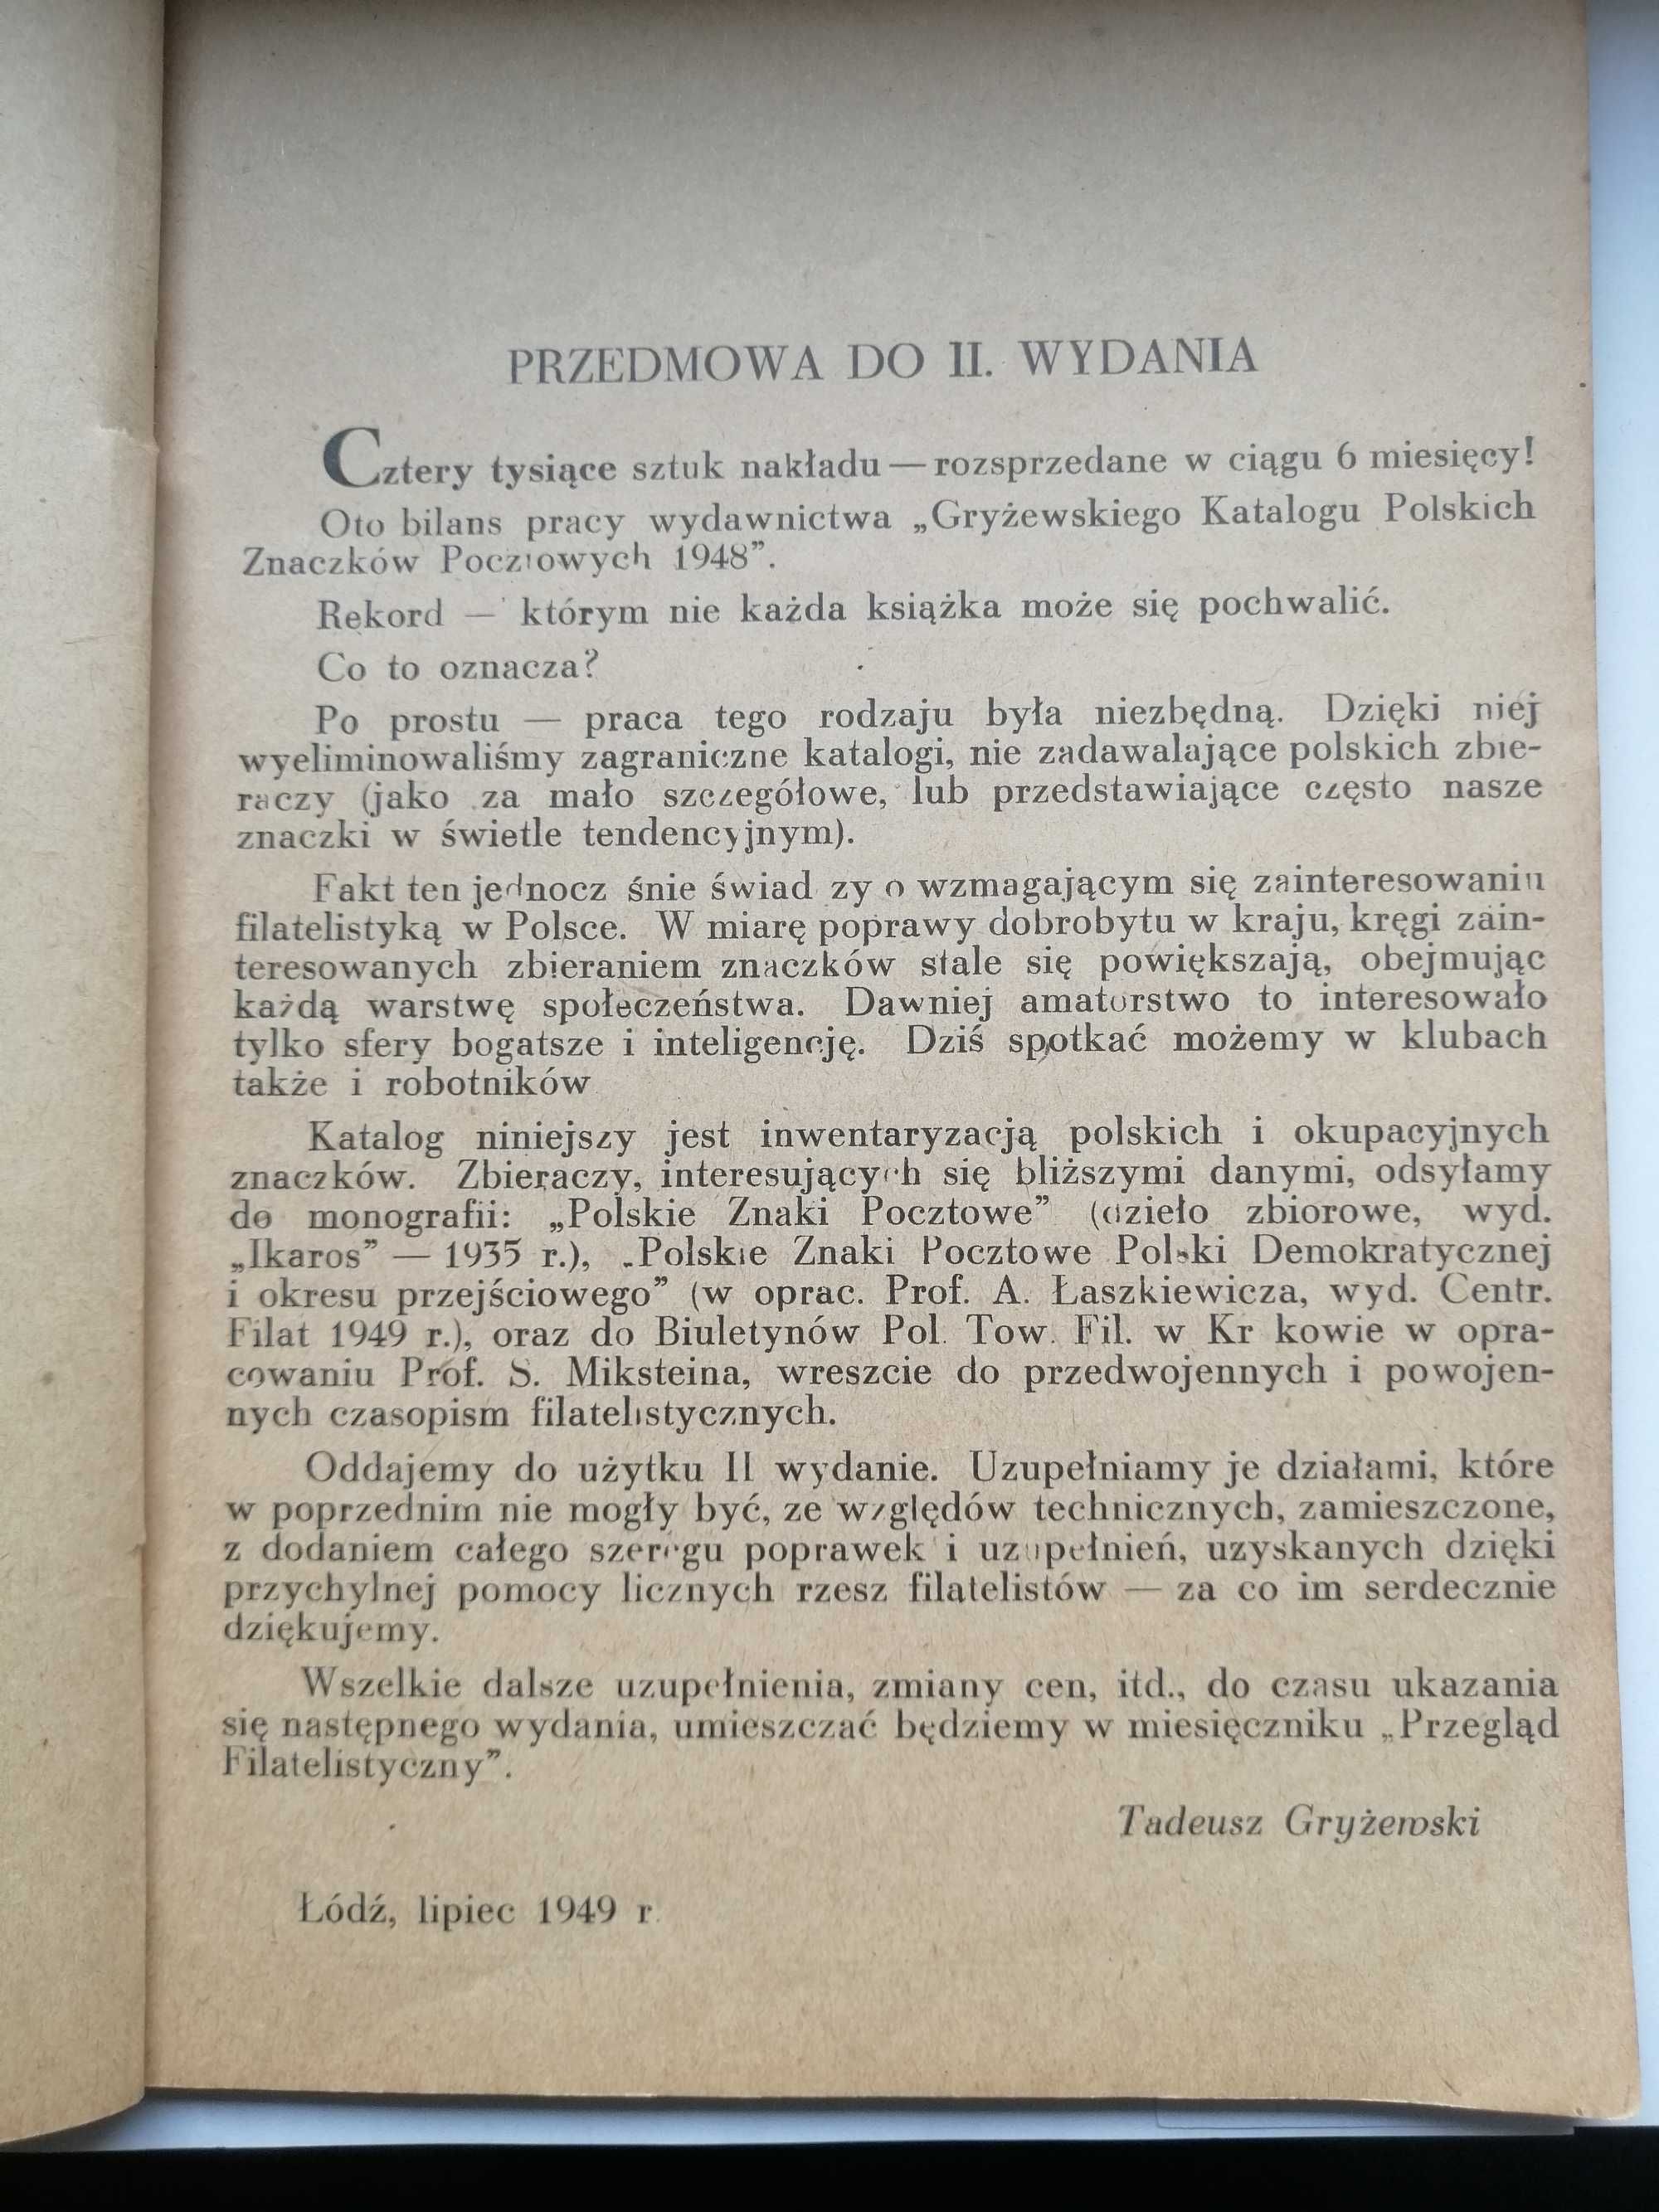 Katalog Polskich Znaczków Pocztowych 1949/50 T. Gryżewski